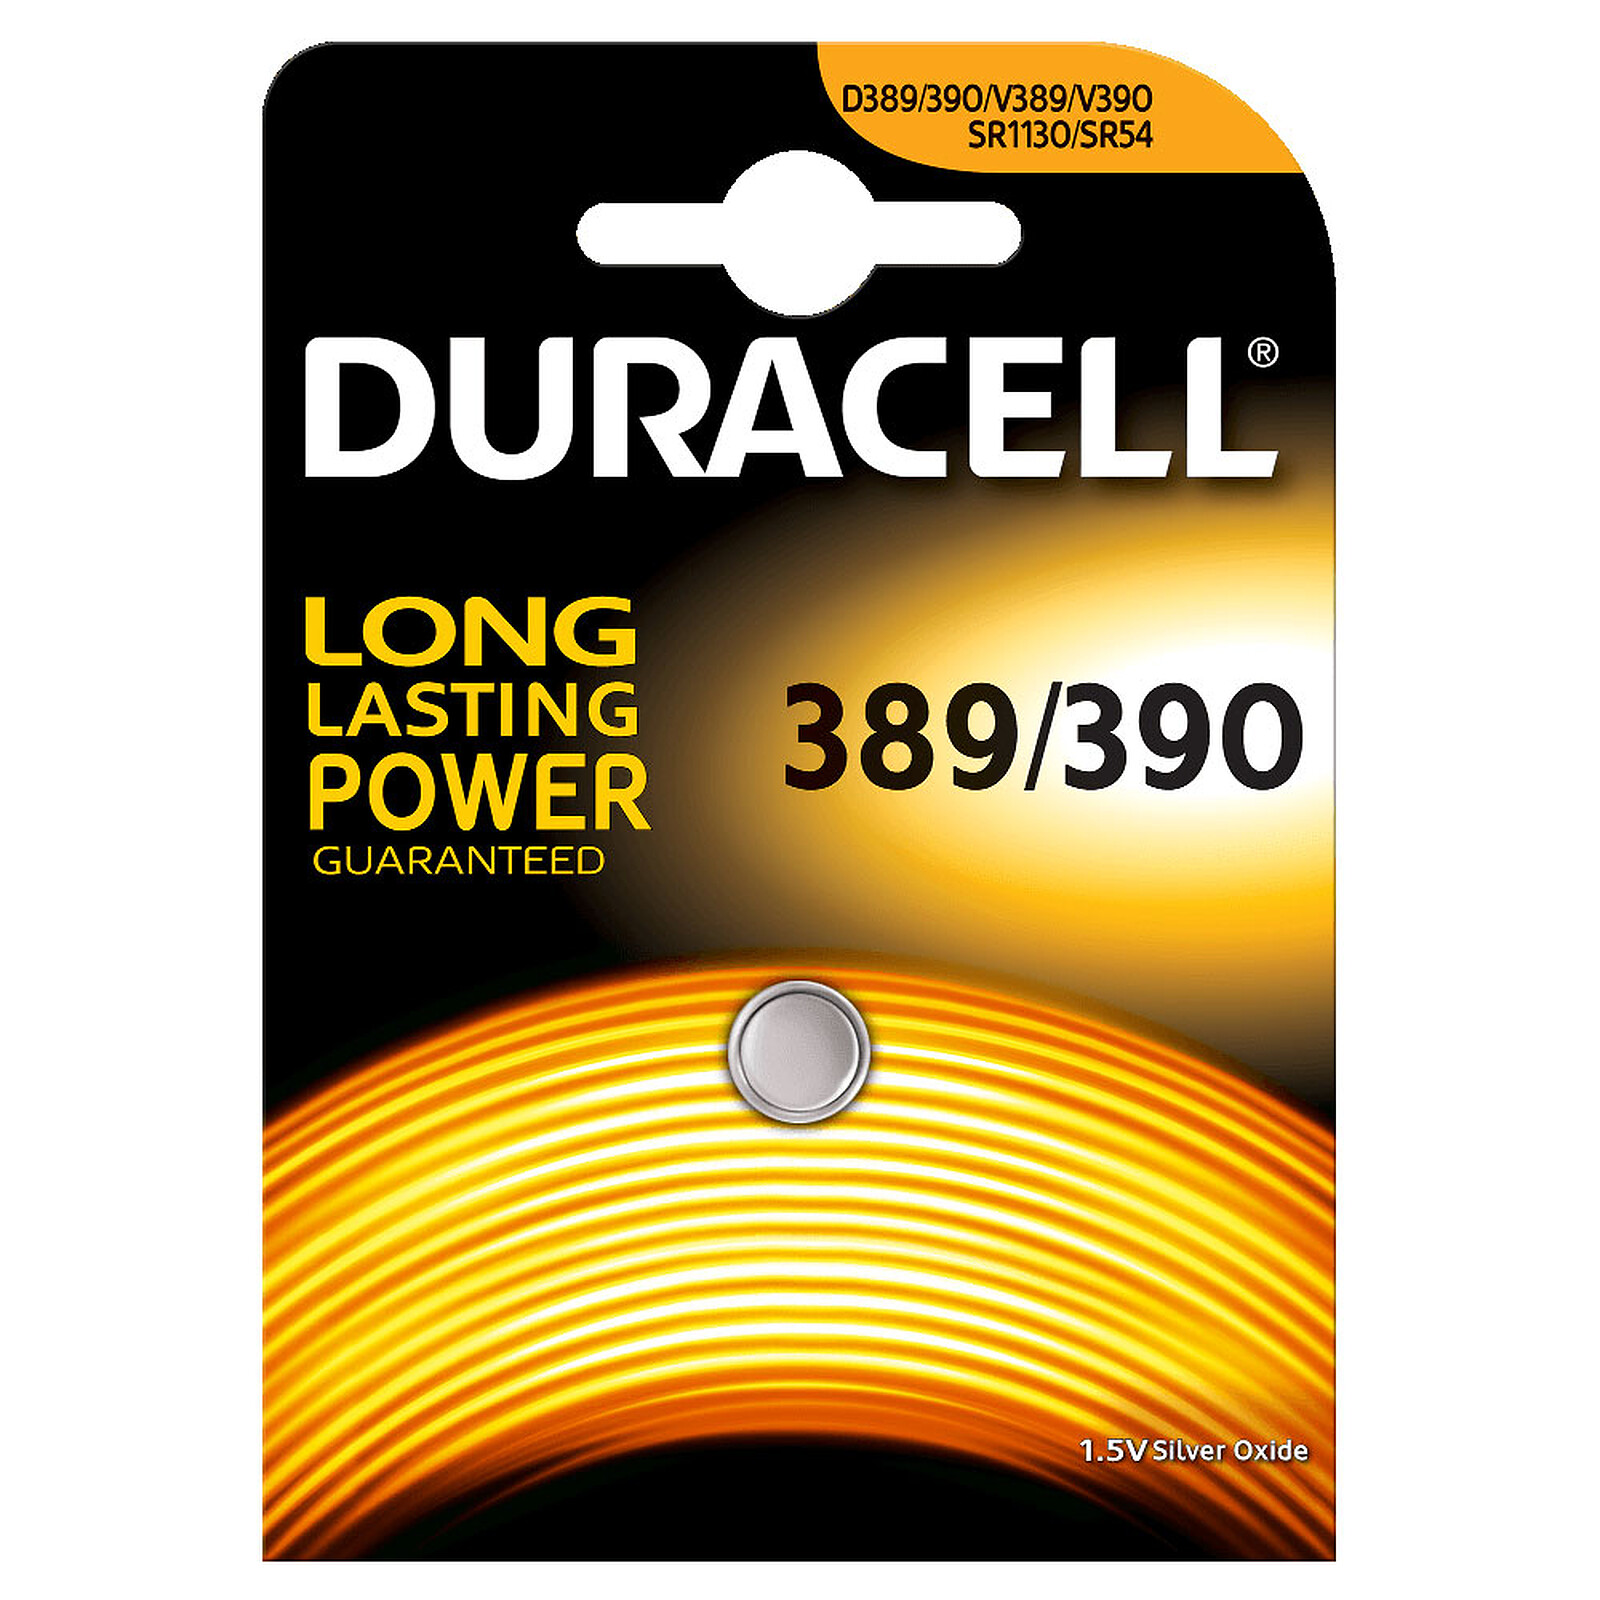 betreuren kapok homoseksueel Duracell 389/390 1.5V - Battery & charger DURACELL on LDLC